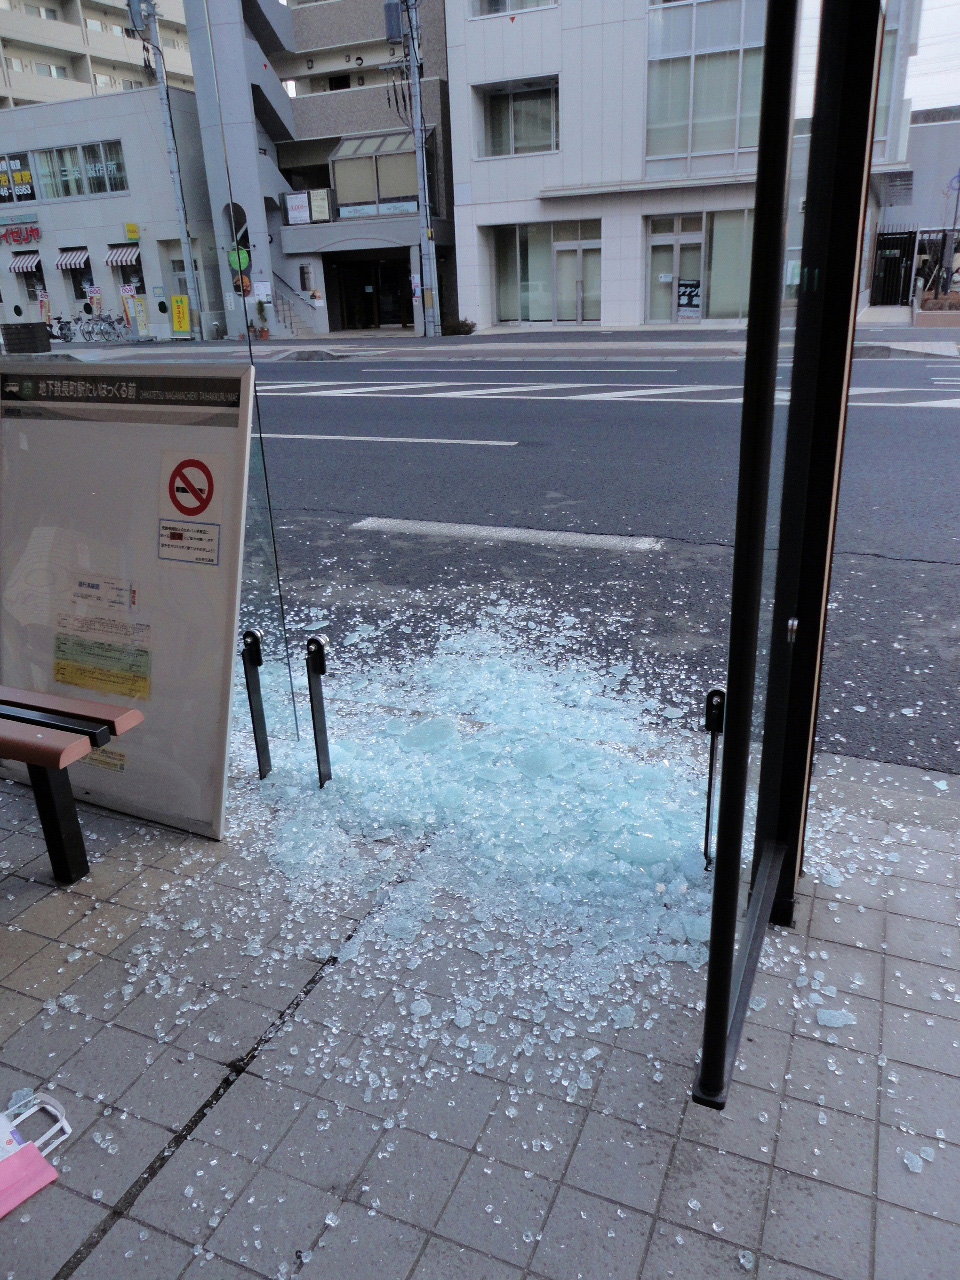 粉々に砕けたバス停のガラス